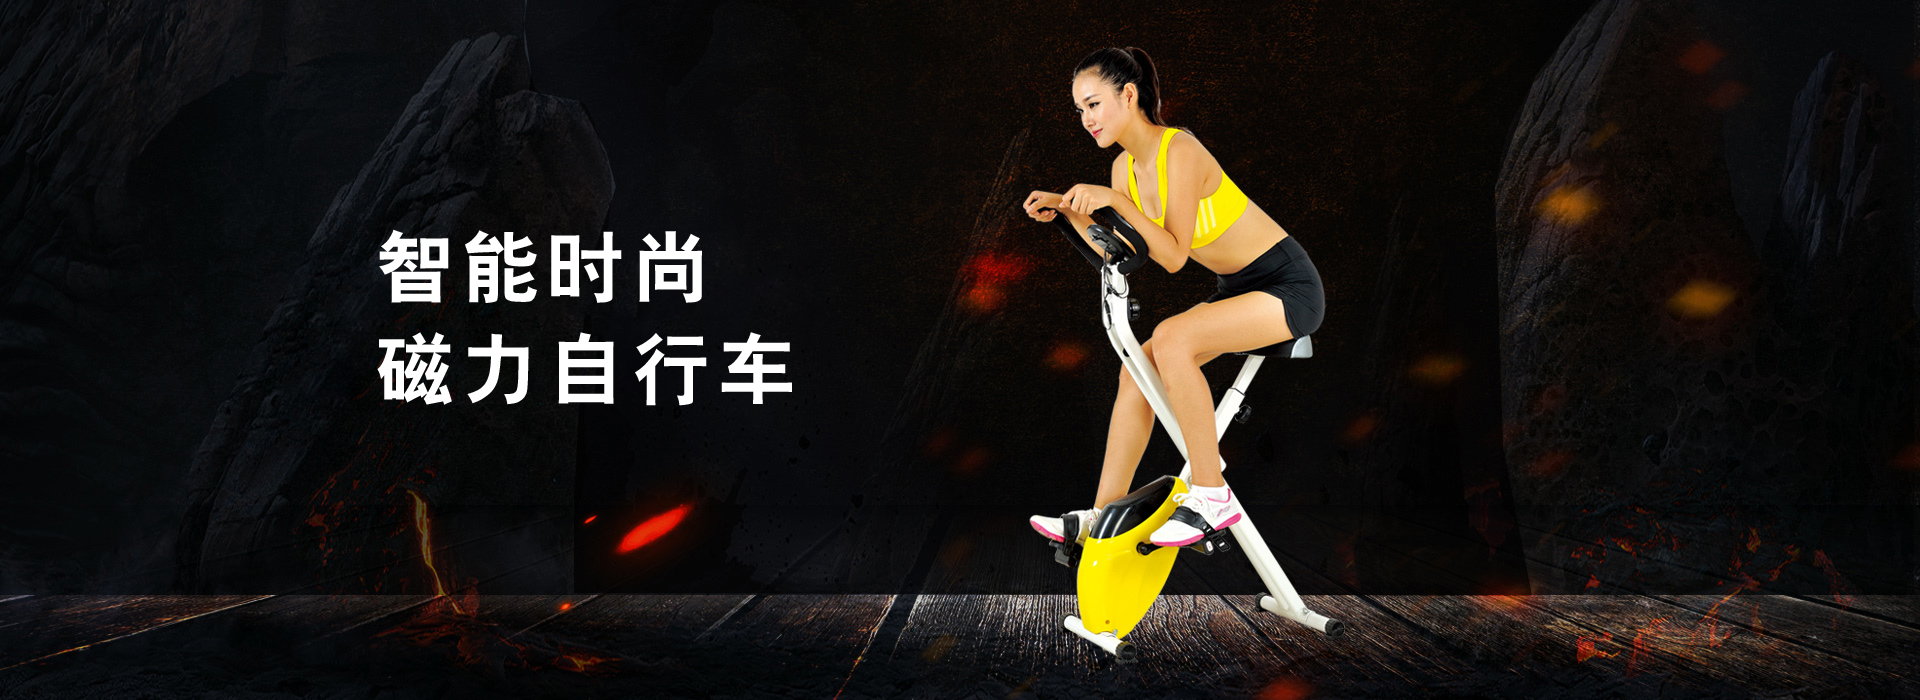 强奔-金华强奔健身器材-强奔健身器材-是一家专业生产体育用品、室内健身器材系列产品的工厂